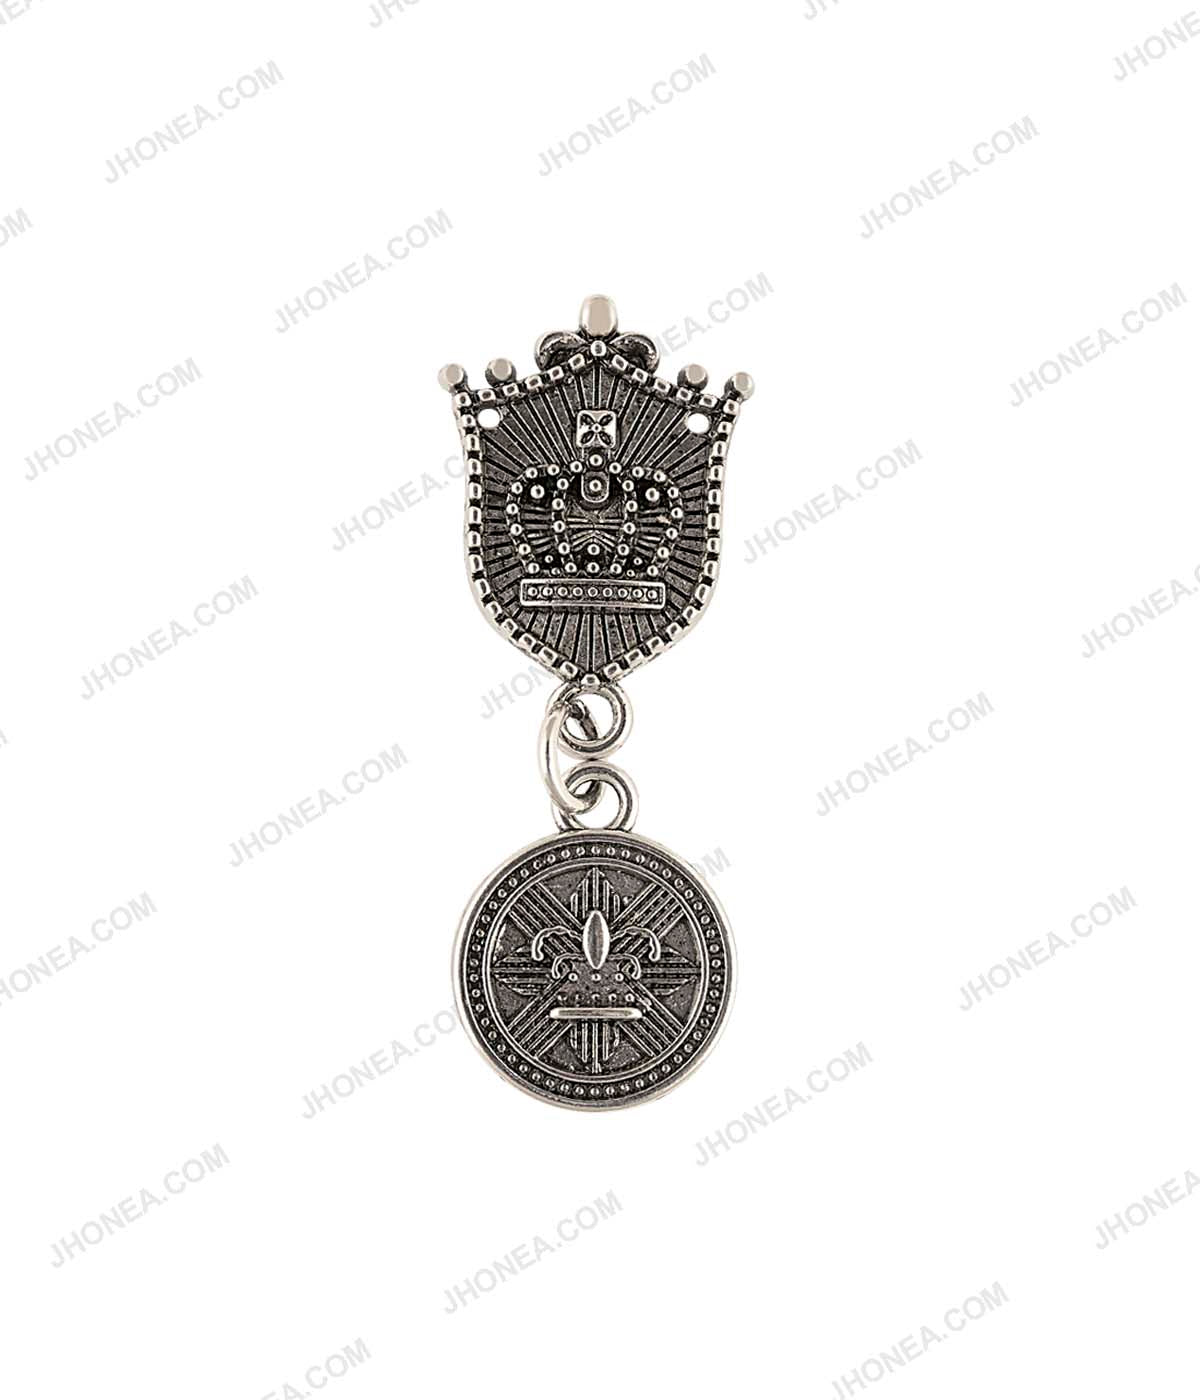 Beautiful Antique Silver Badge Design British Fashion Accessory